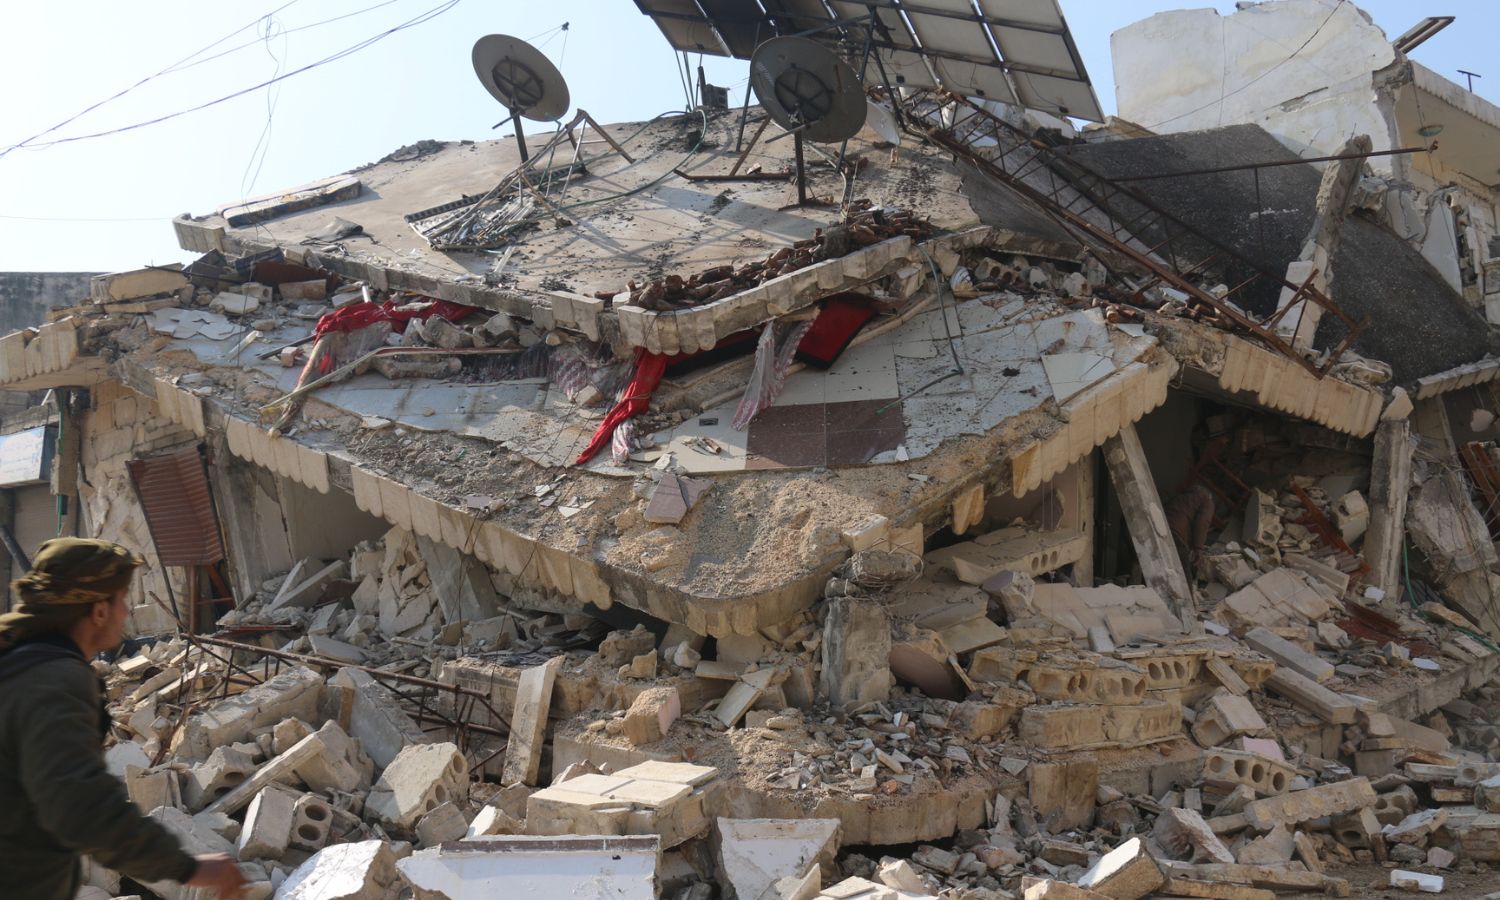 ركام وأبنية مهدّمة في بلدة جنديرس إثر زلزال ضرب مناطق شمال غربي سوريا- 8 شباط 2023 (عنب بلدي/ ديان جنباز)